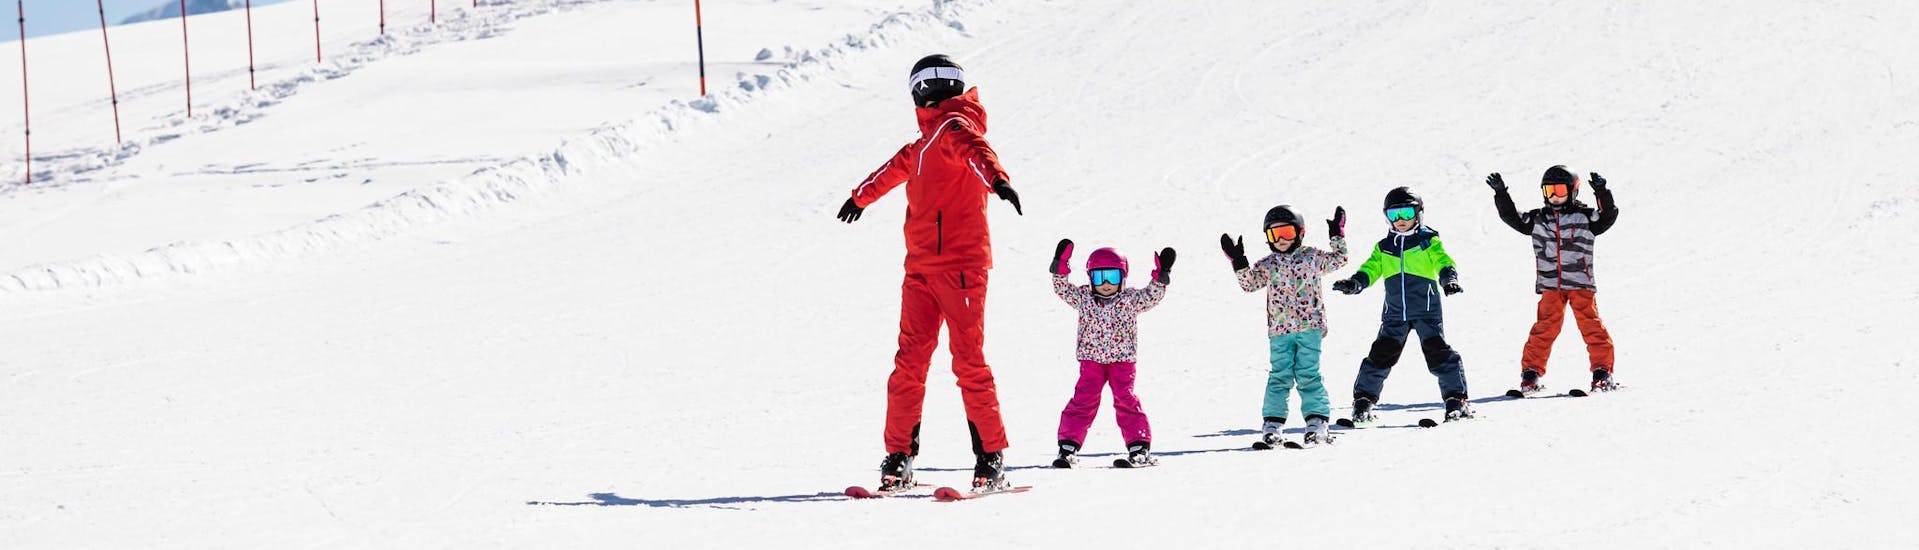 Instructor de esquí y niños disfrutan de una clase de esquí en una escuela cerca de Liberec.